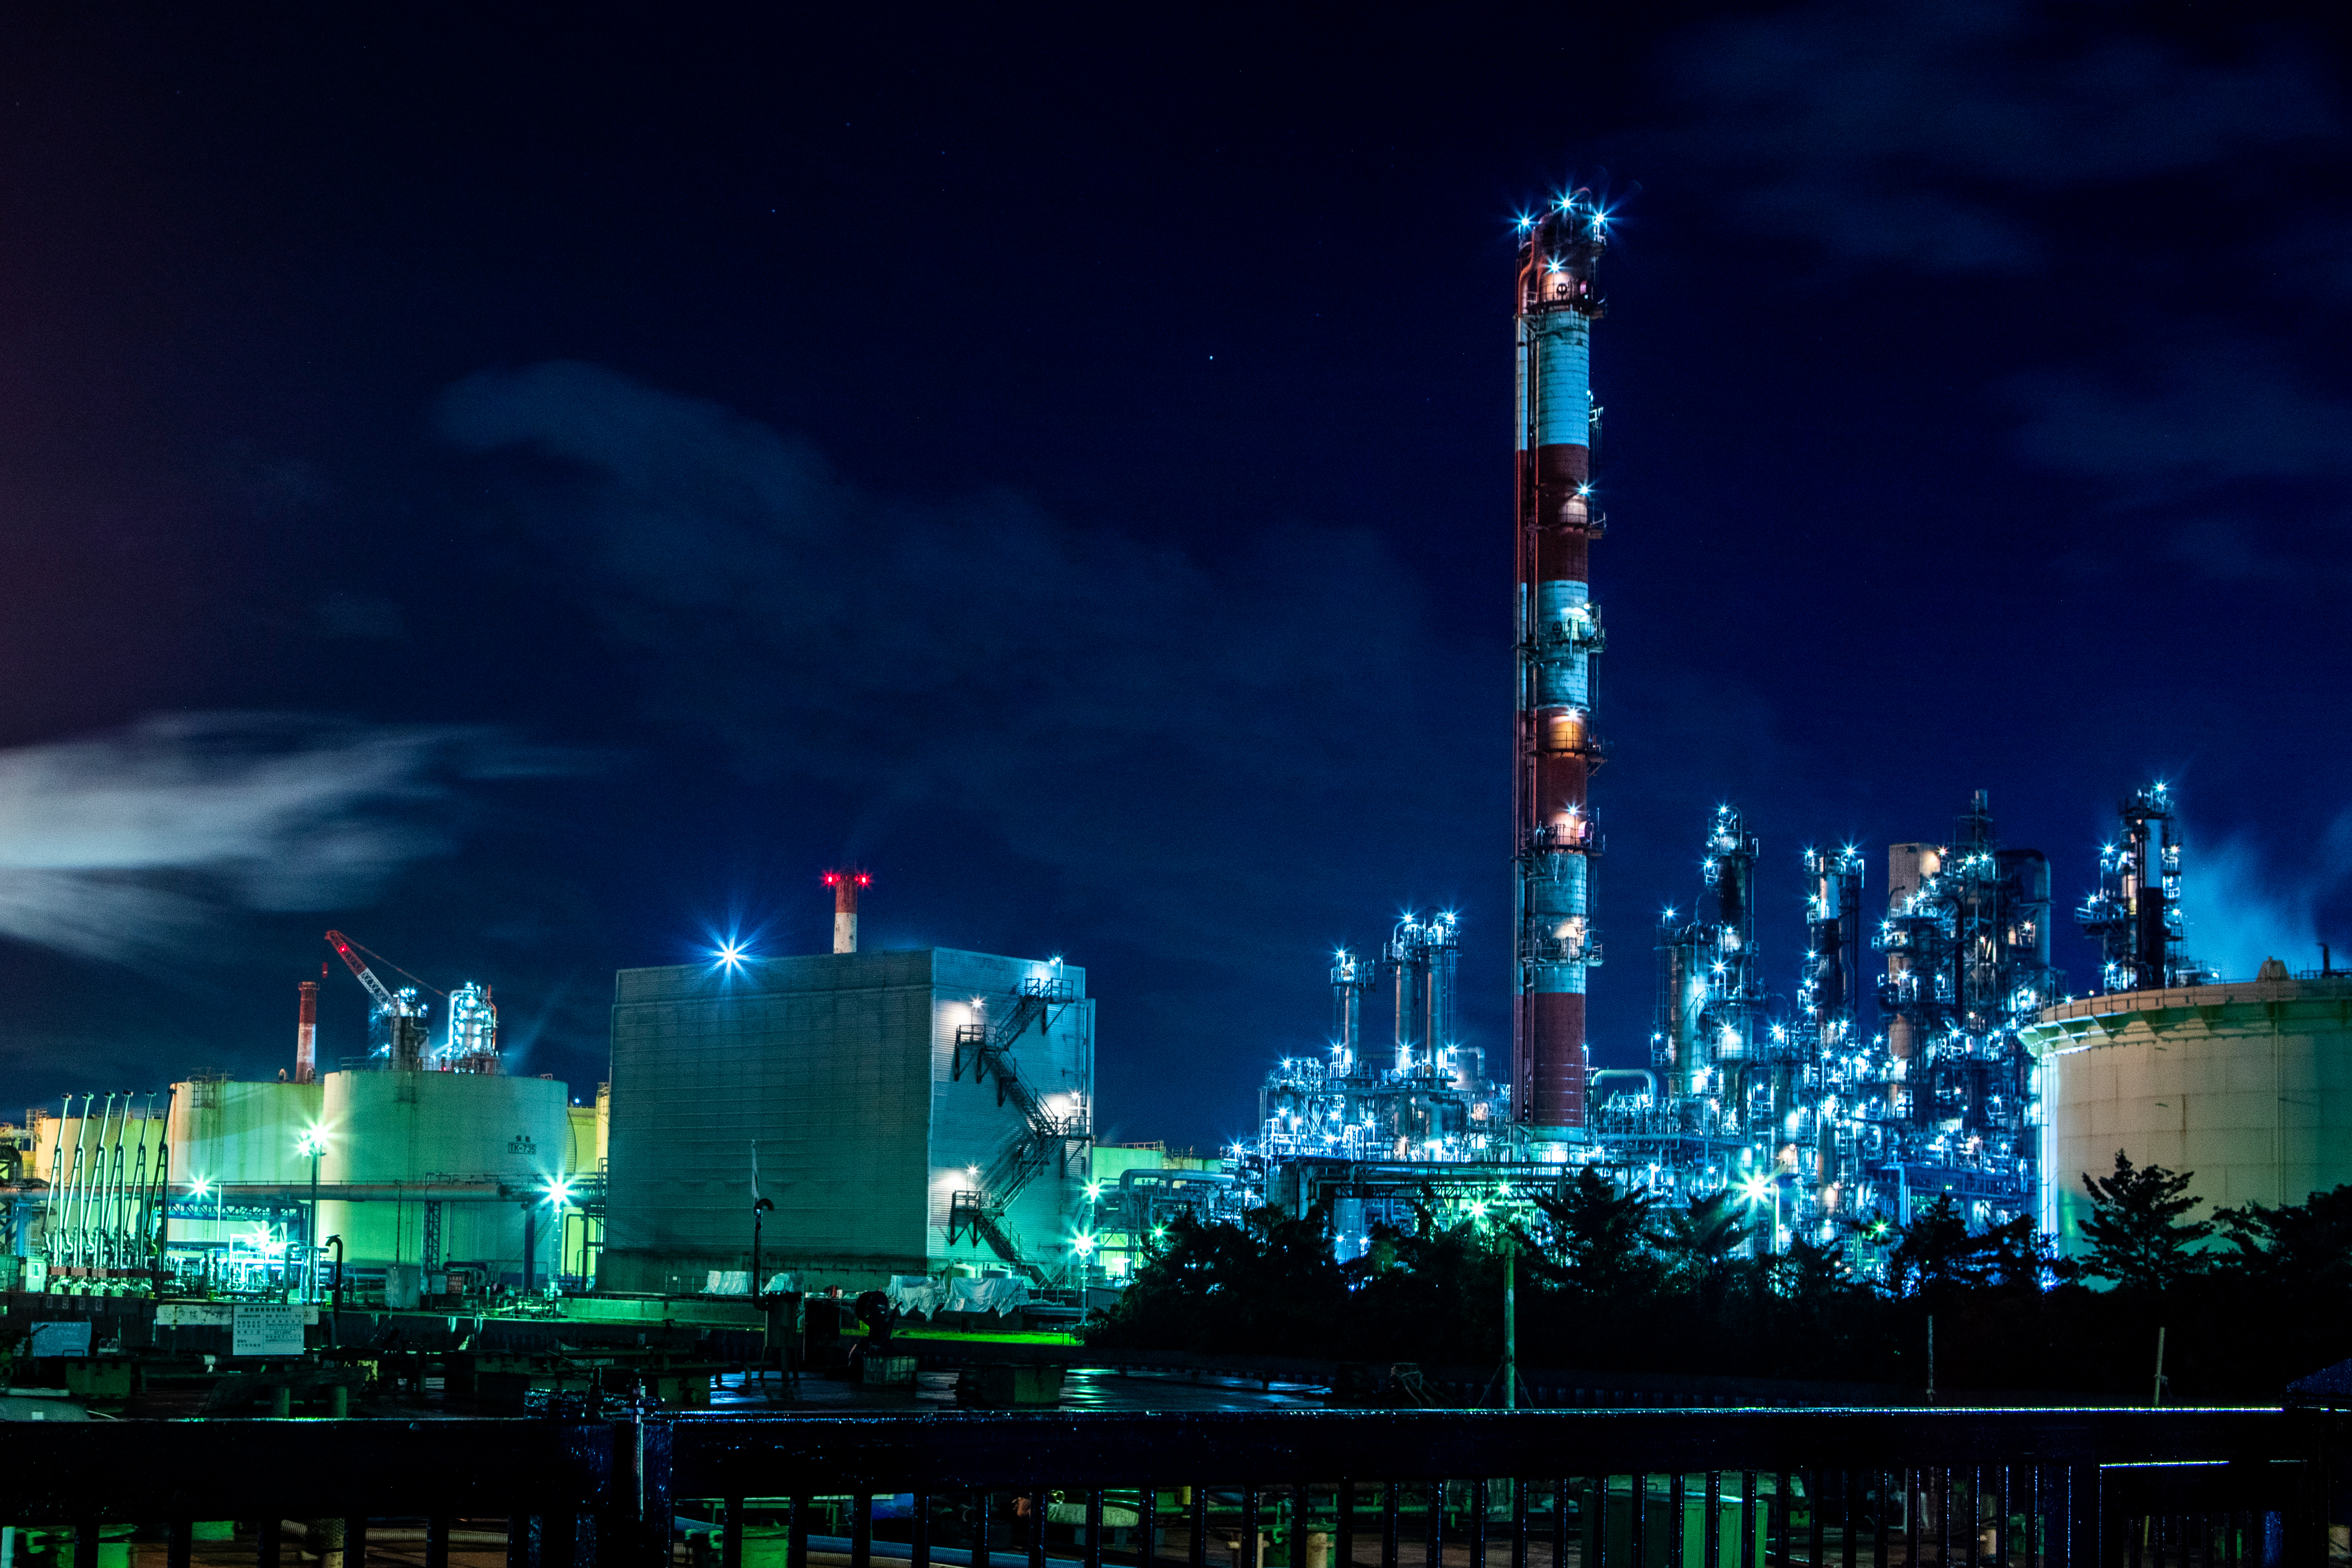 川崎の工場夜景の写真 画像 フリー素材 ぱくたそ